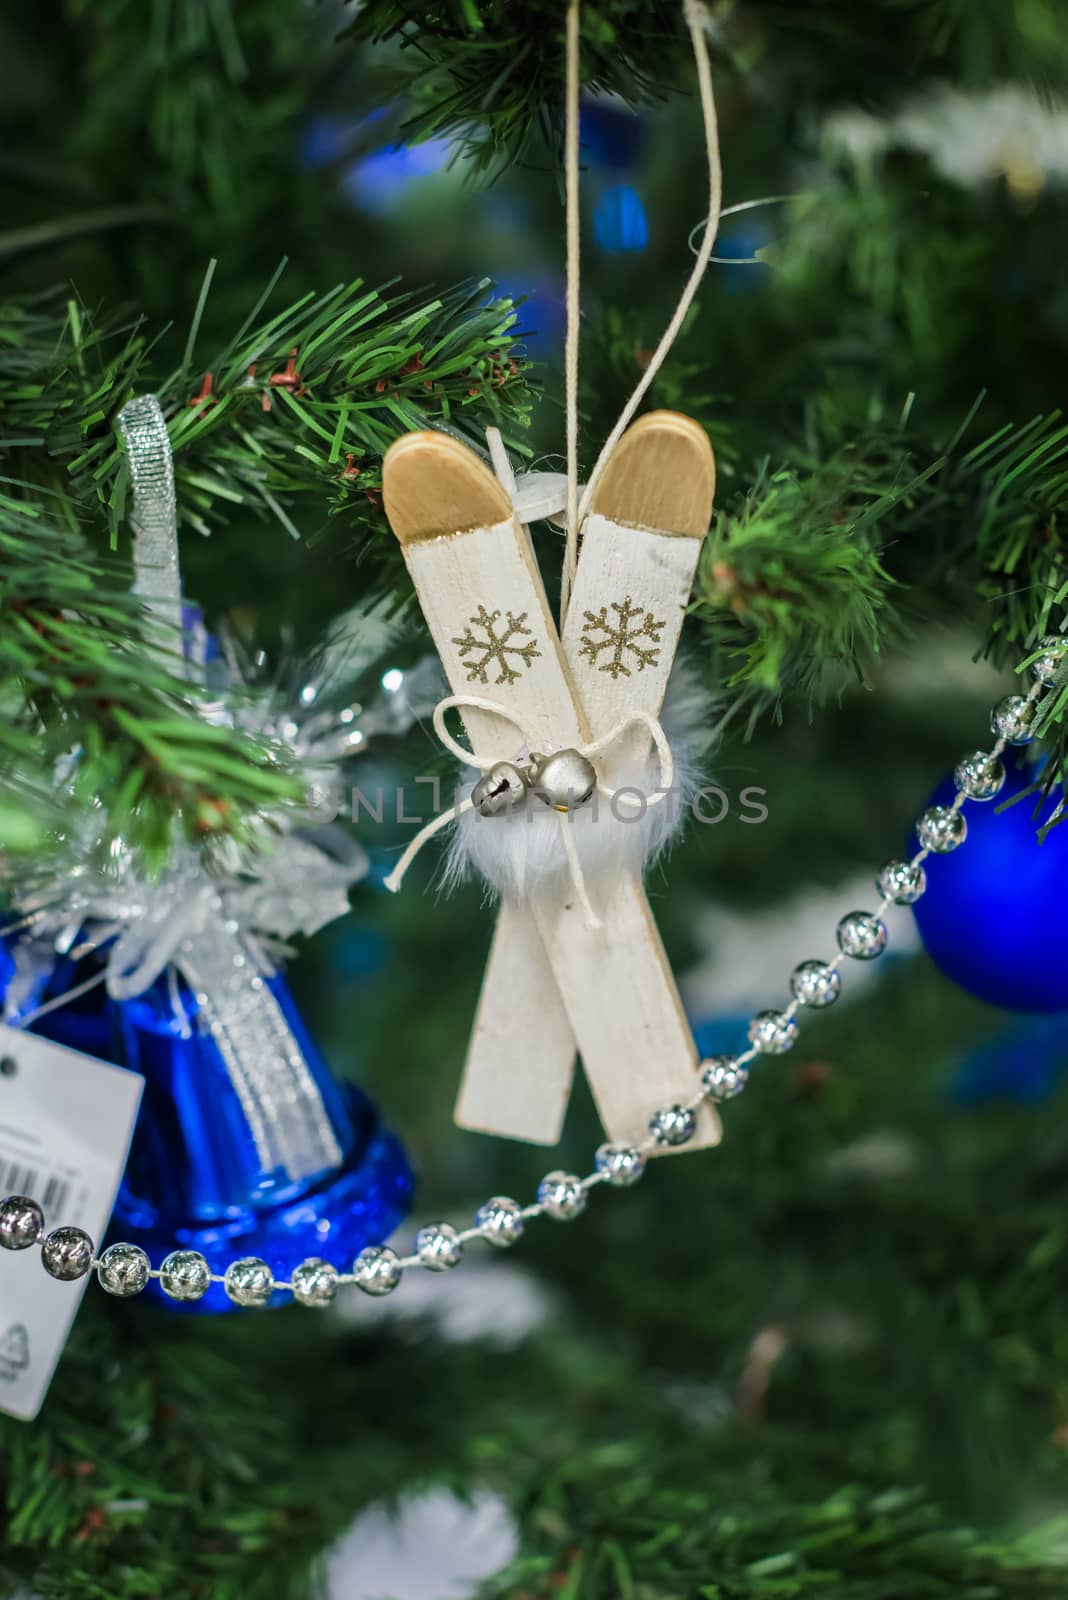 Christmas decorations on a Christmas tree. Christmas decorations like skis